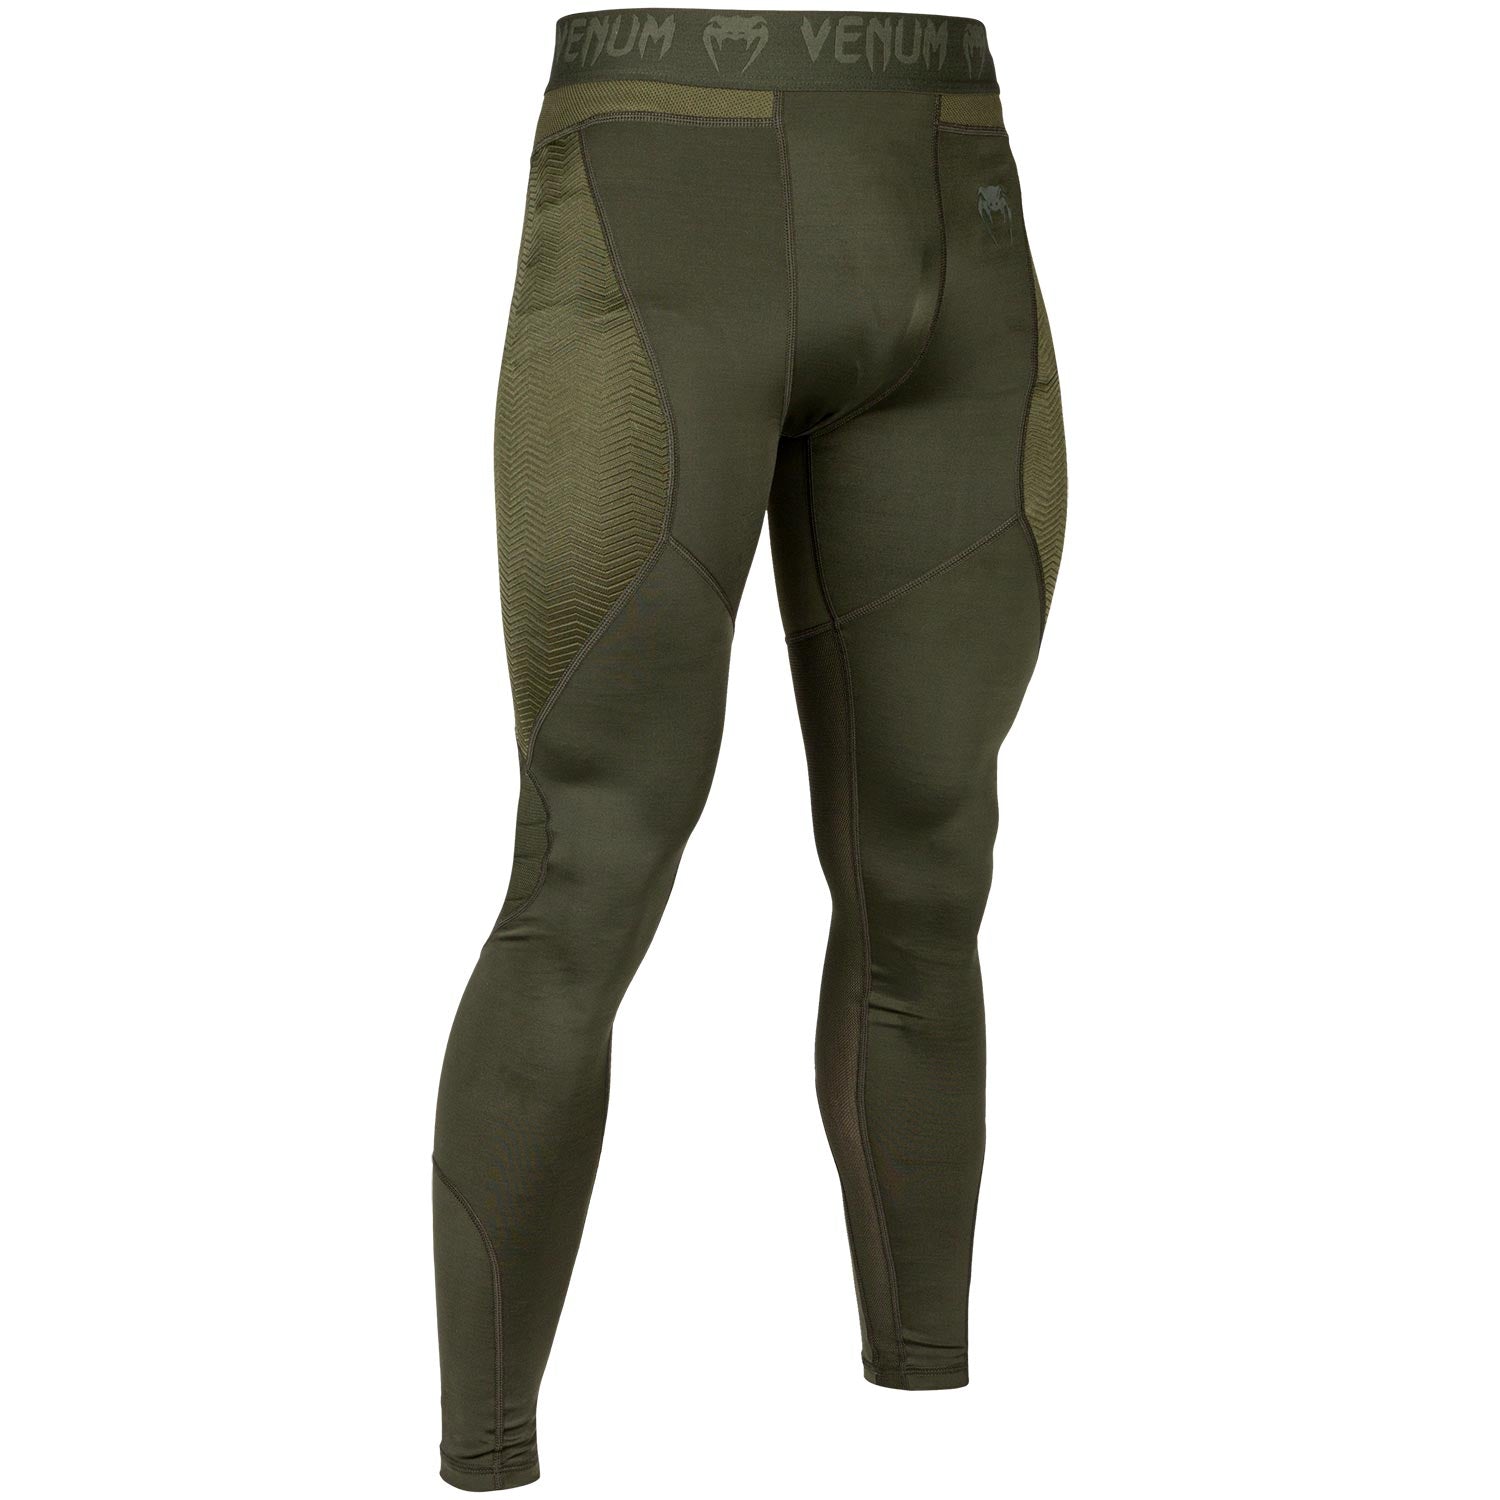 Pantalon de Compression Venum G-Fit - Pantalons de compression